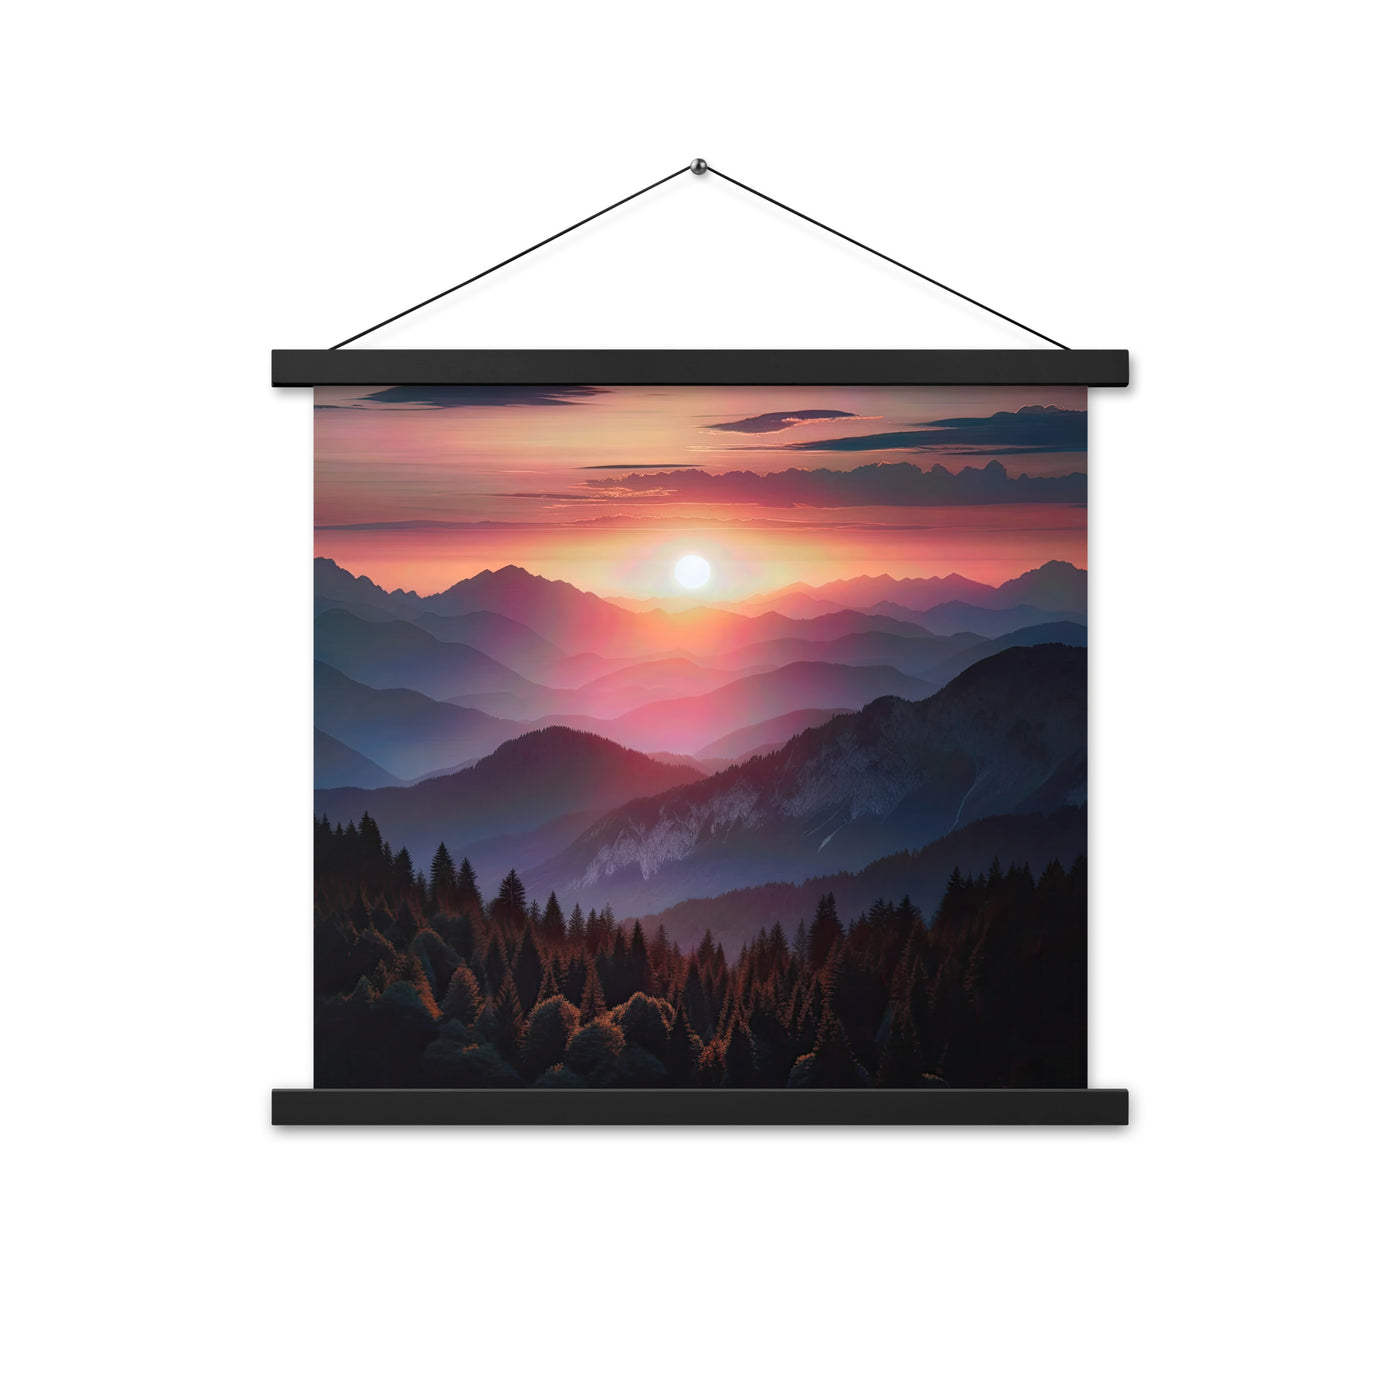 Foto der Alpenwildnis beim Sonnenuntergang, Himmel in warmen Orange-Tönen - Premium Poster mit Aufhängung berge xxx yyy zzz 45.7 x 45.7 cm